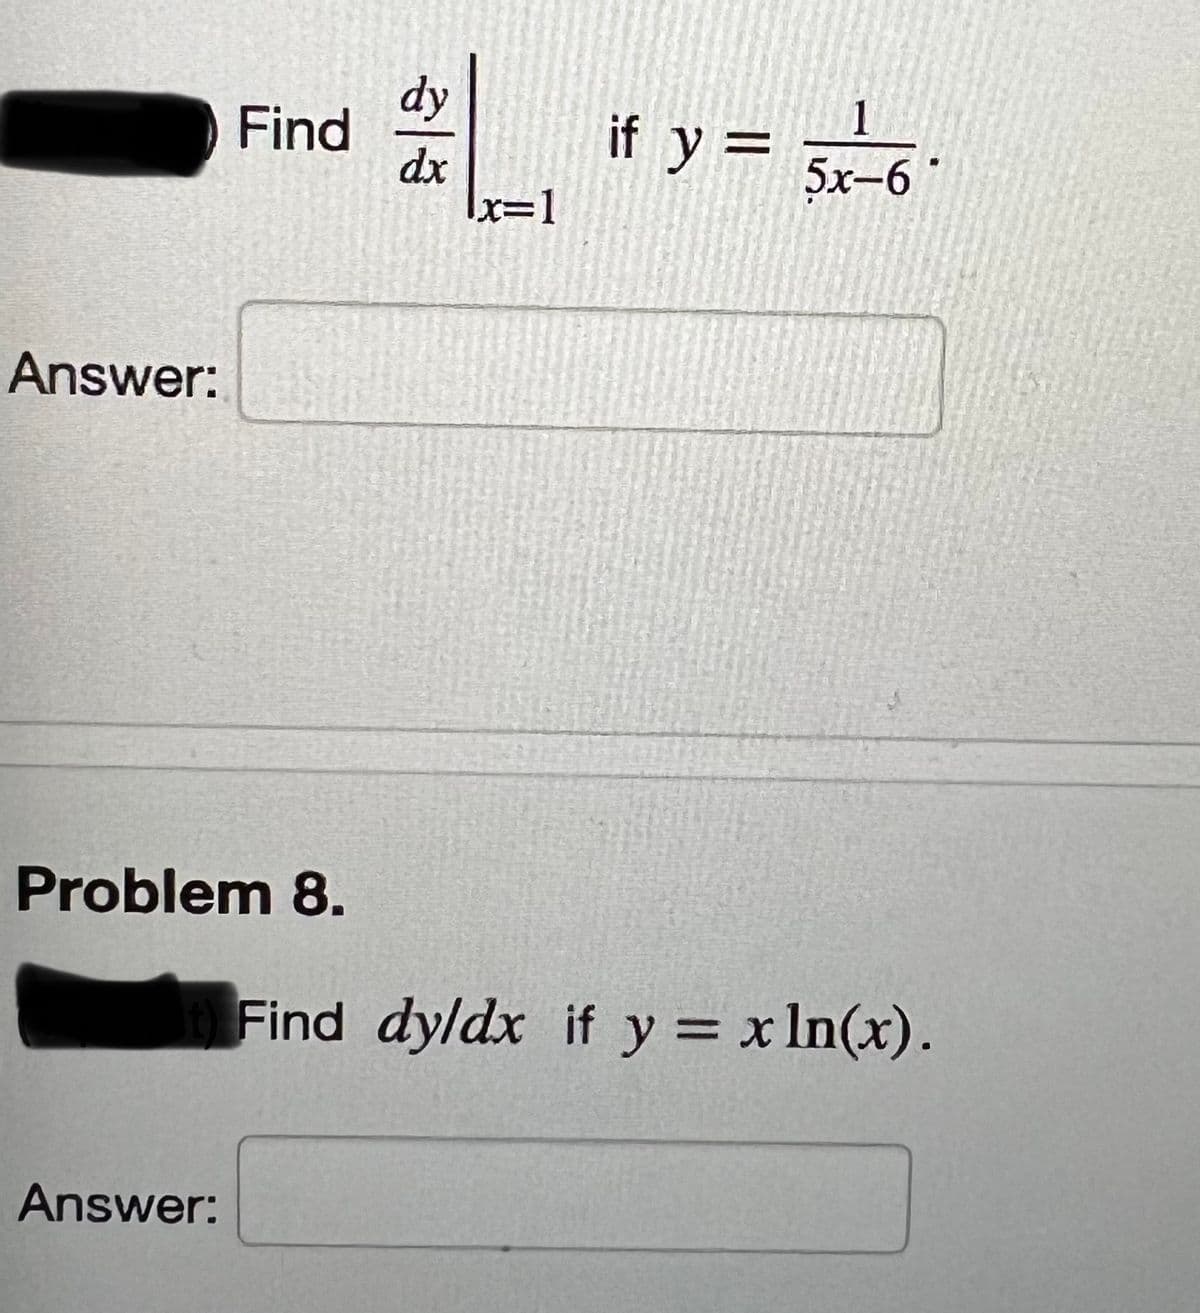 Answer:
Find
Problem 8.
Answer:
dy
dx
x=1
1
if y = 5x-6°
Find dy/dx if y = x ln(x).